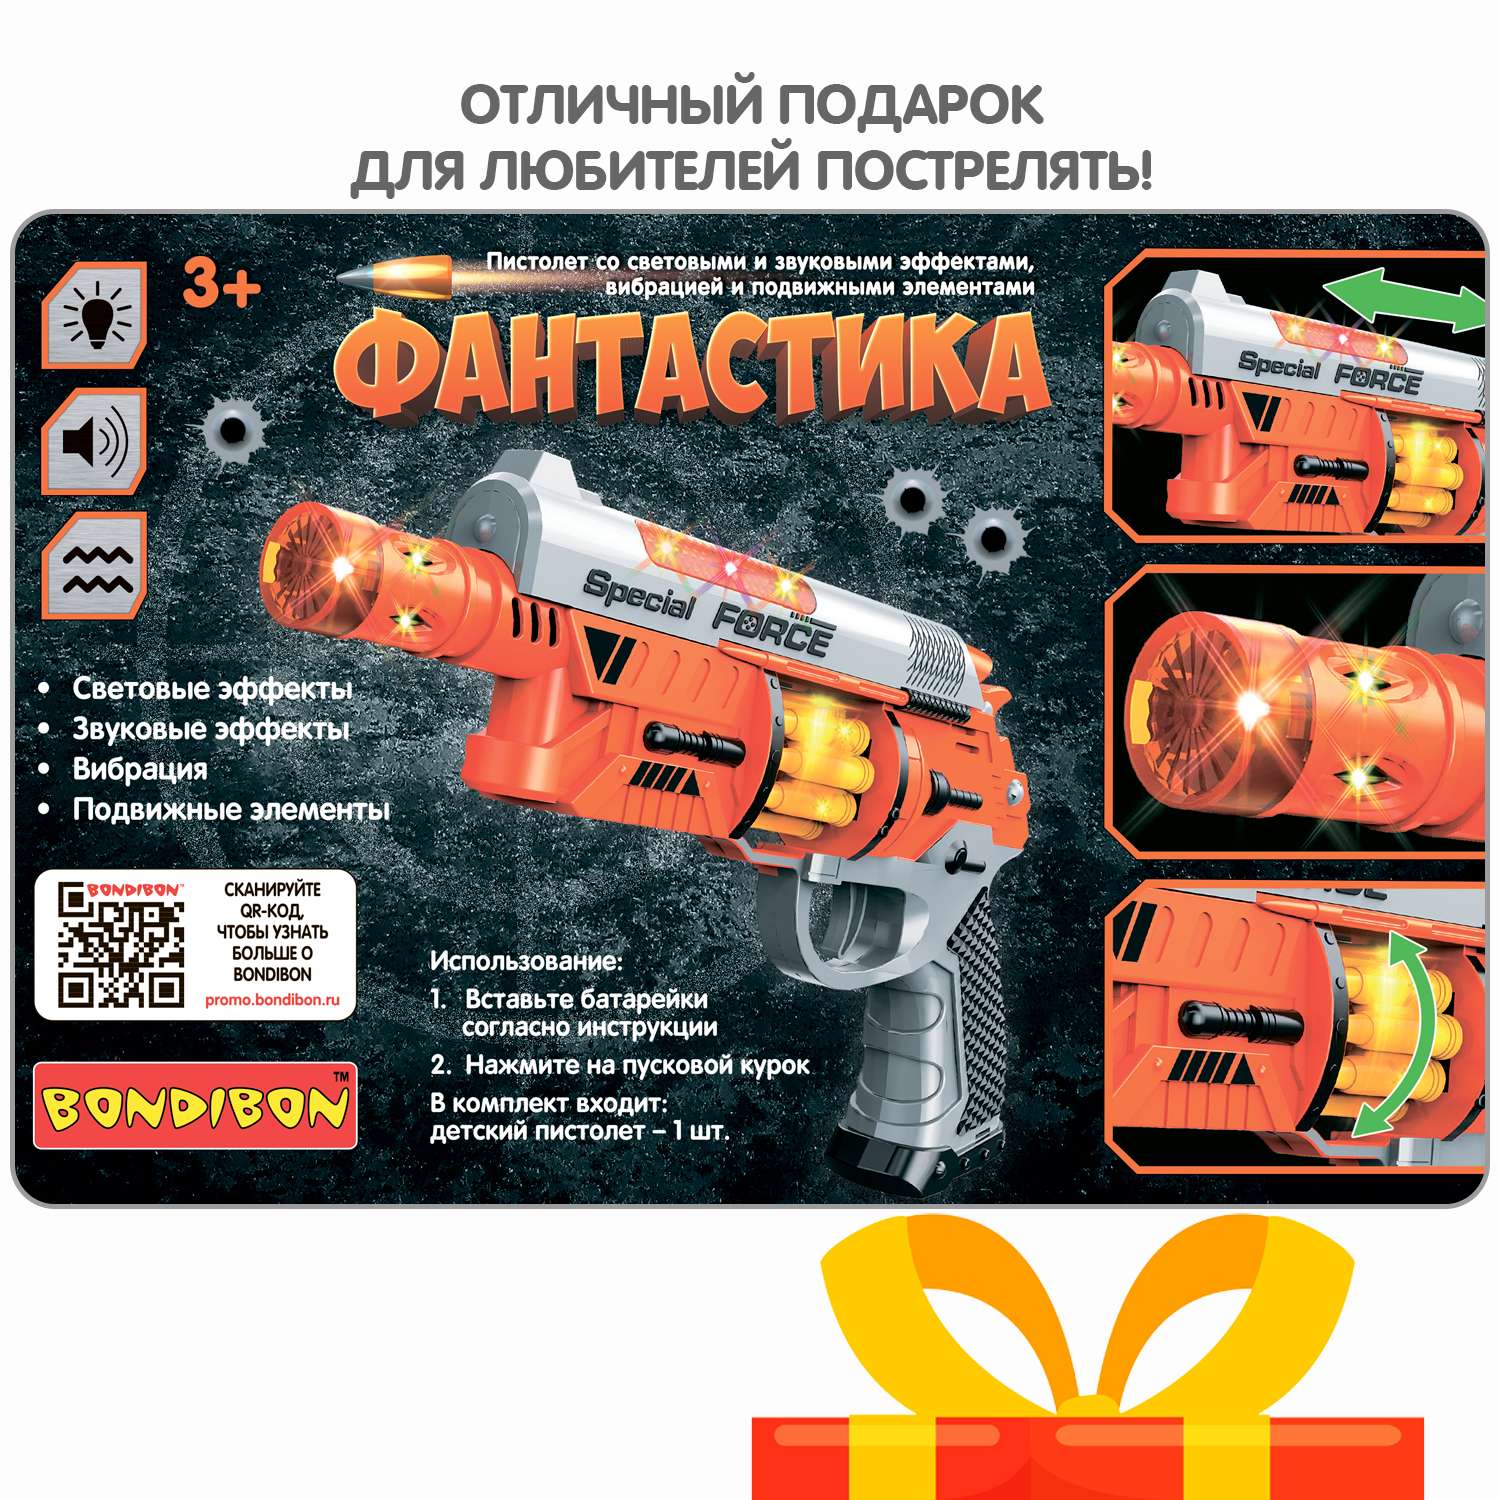 Пистолет BONDIBON Фантастика со свето-звуковым эффектом и подвижными элементами серебристо-оранжевого цвета - фото 12